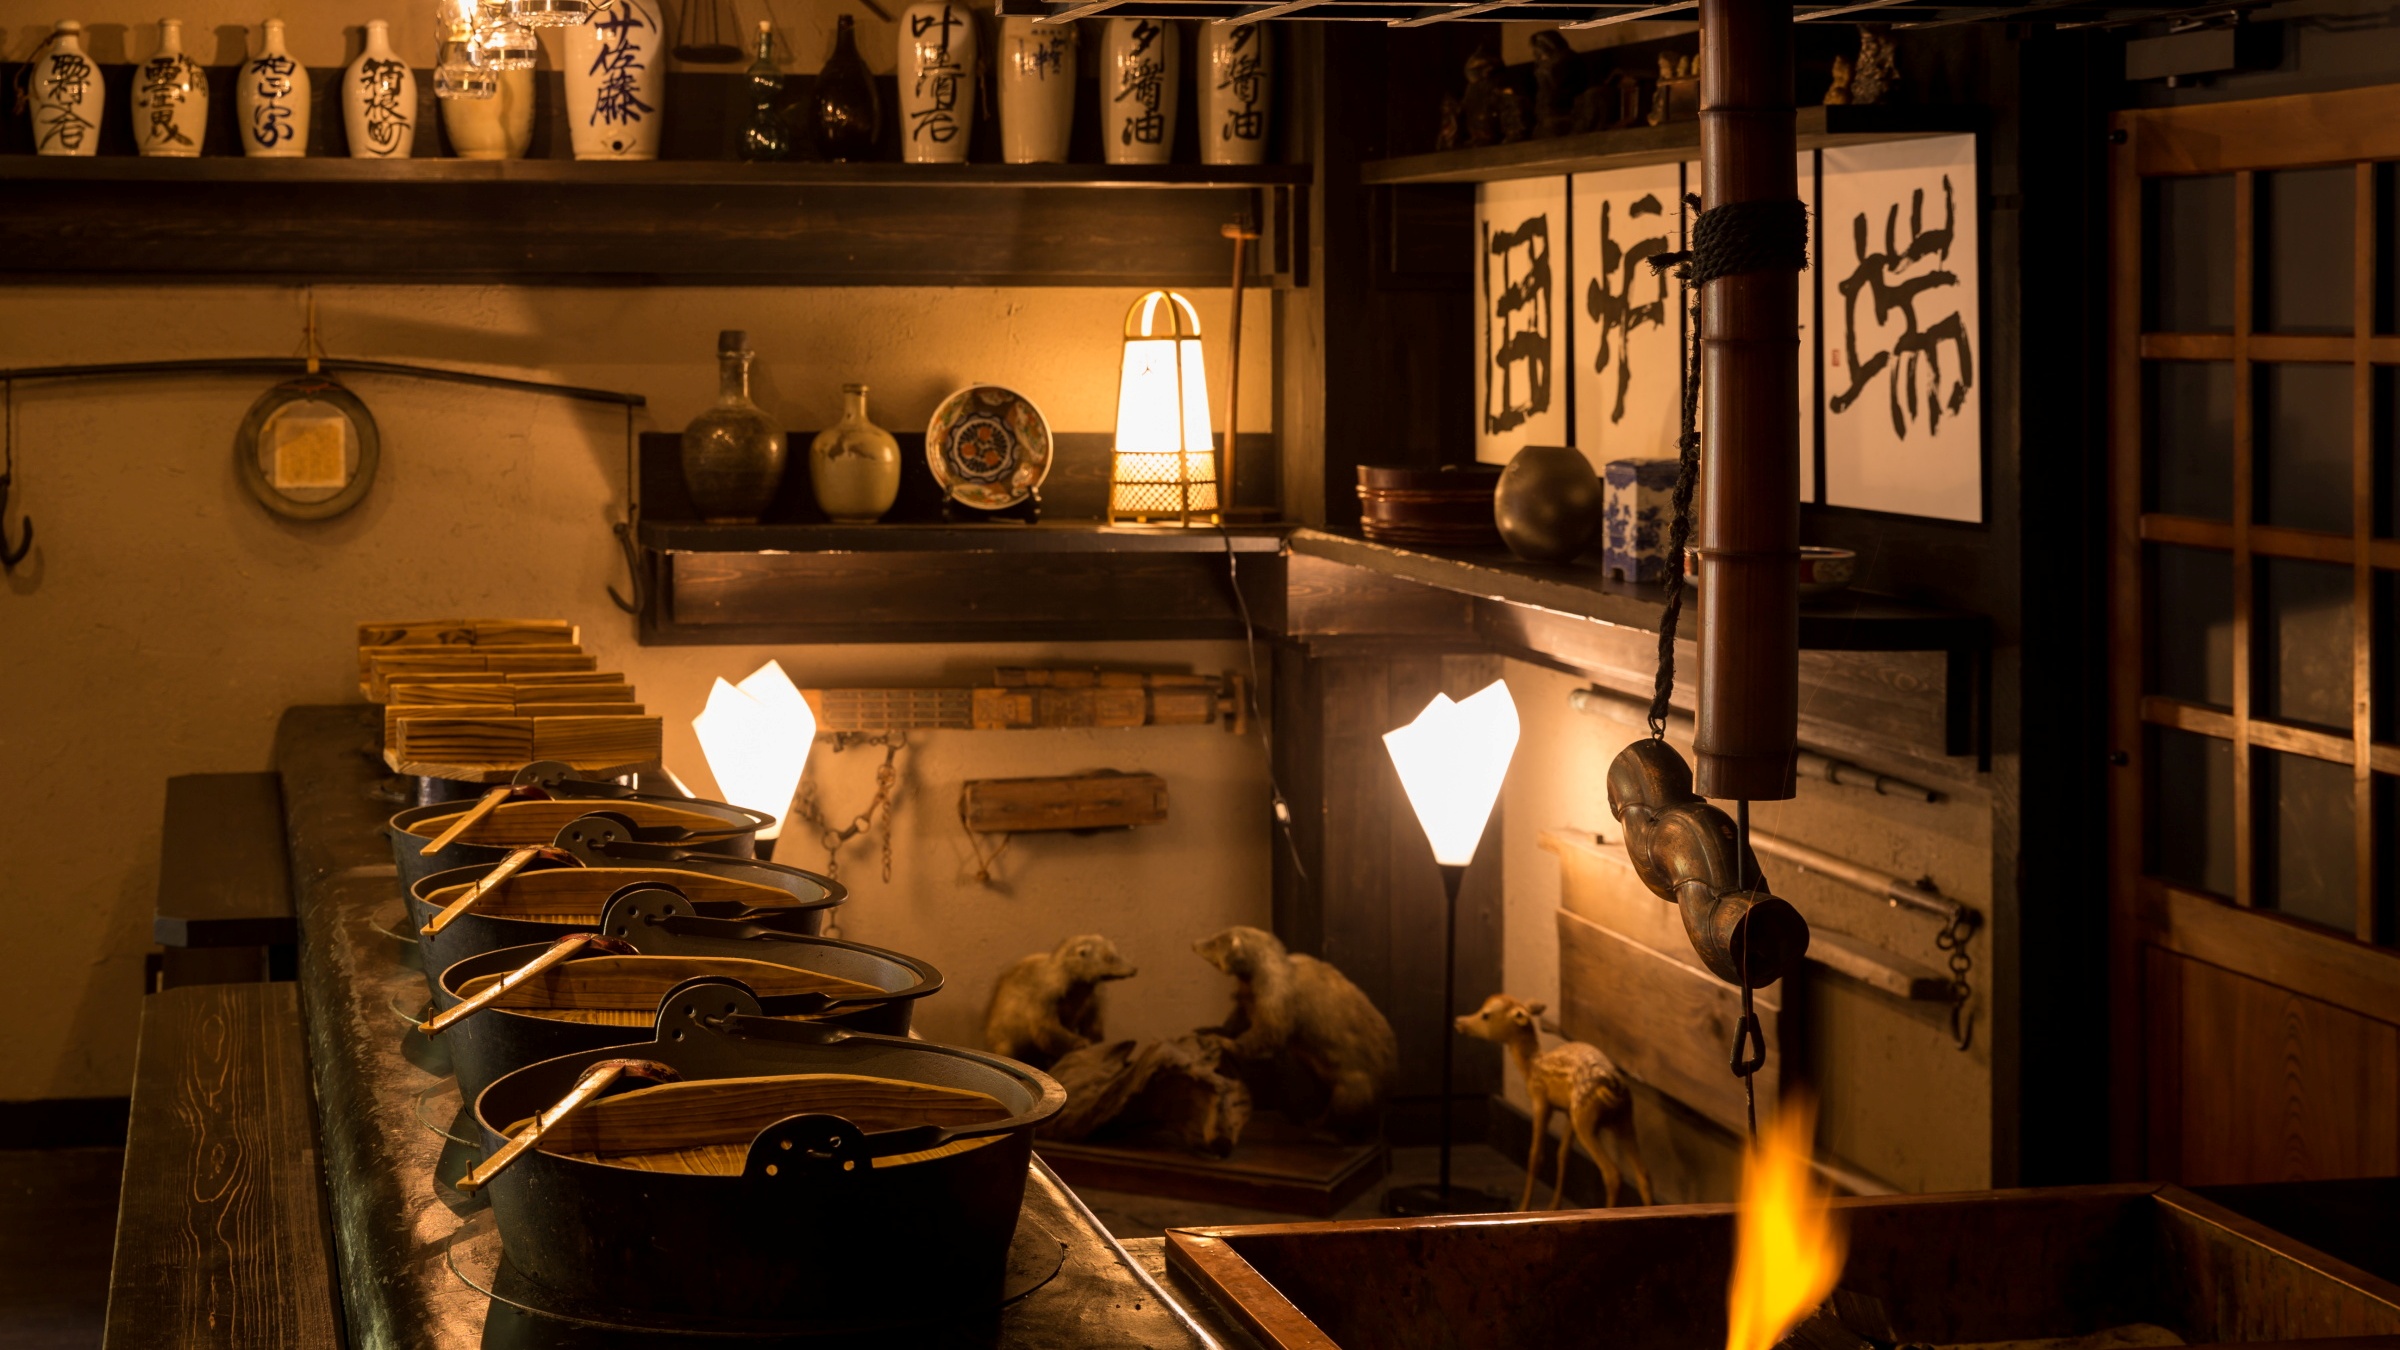 名物囲炉裏料理や田舎料理『かまど』を使用した秘伝の武家料理と地産地消ならではの創作郷土料理。。。